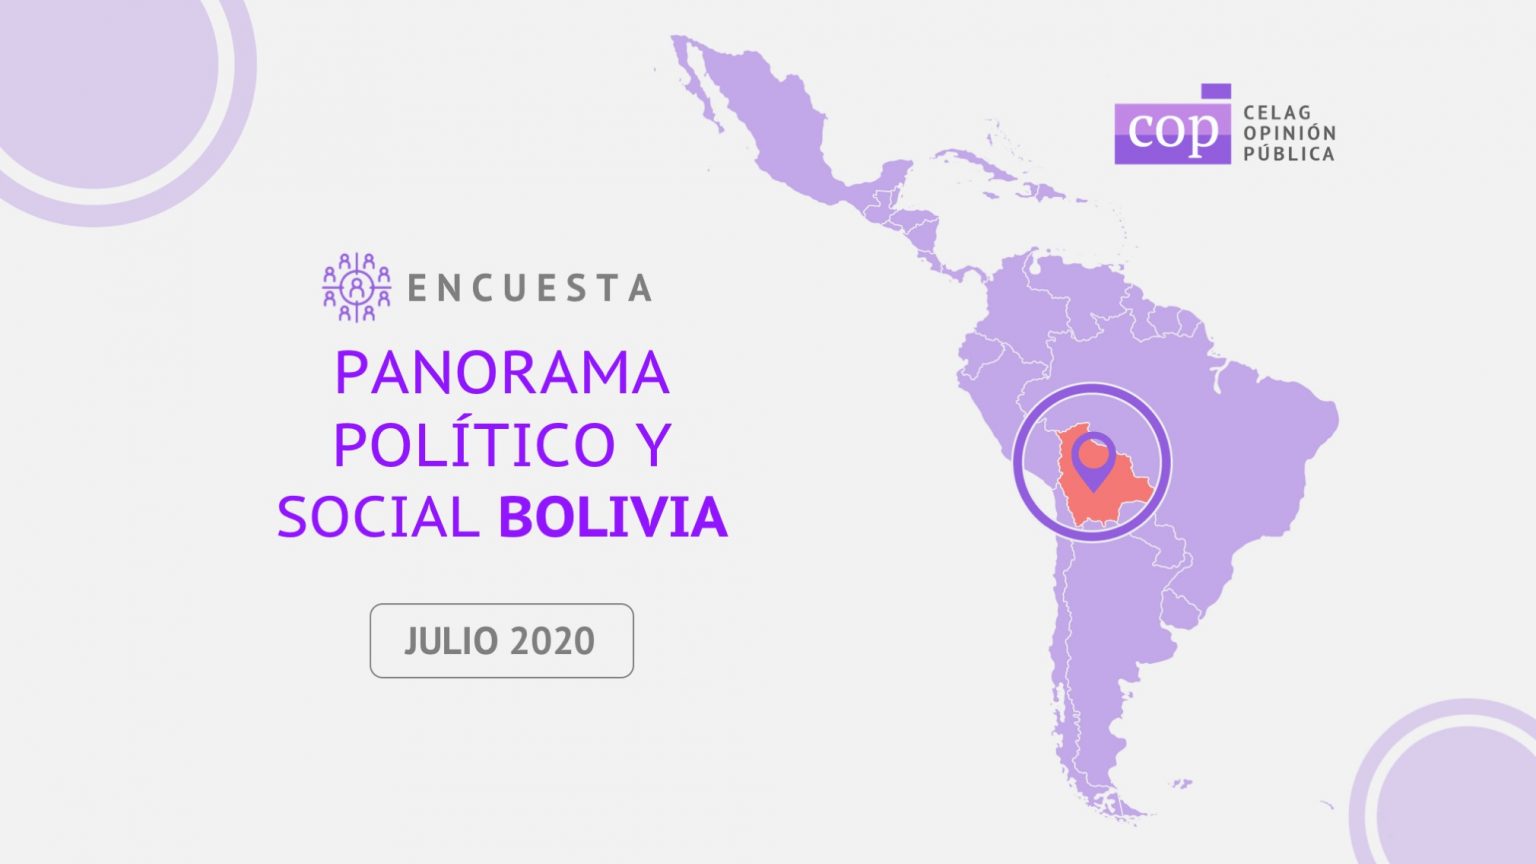 Encuesta CELAG: Luis arce encabeza preferencia electoral para las próximas elecciones de Bolivia